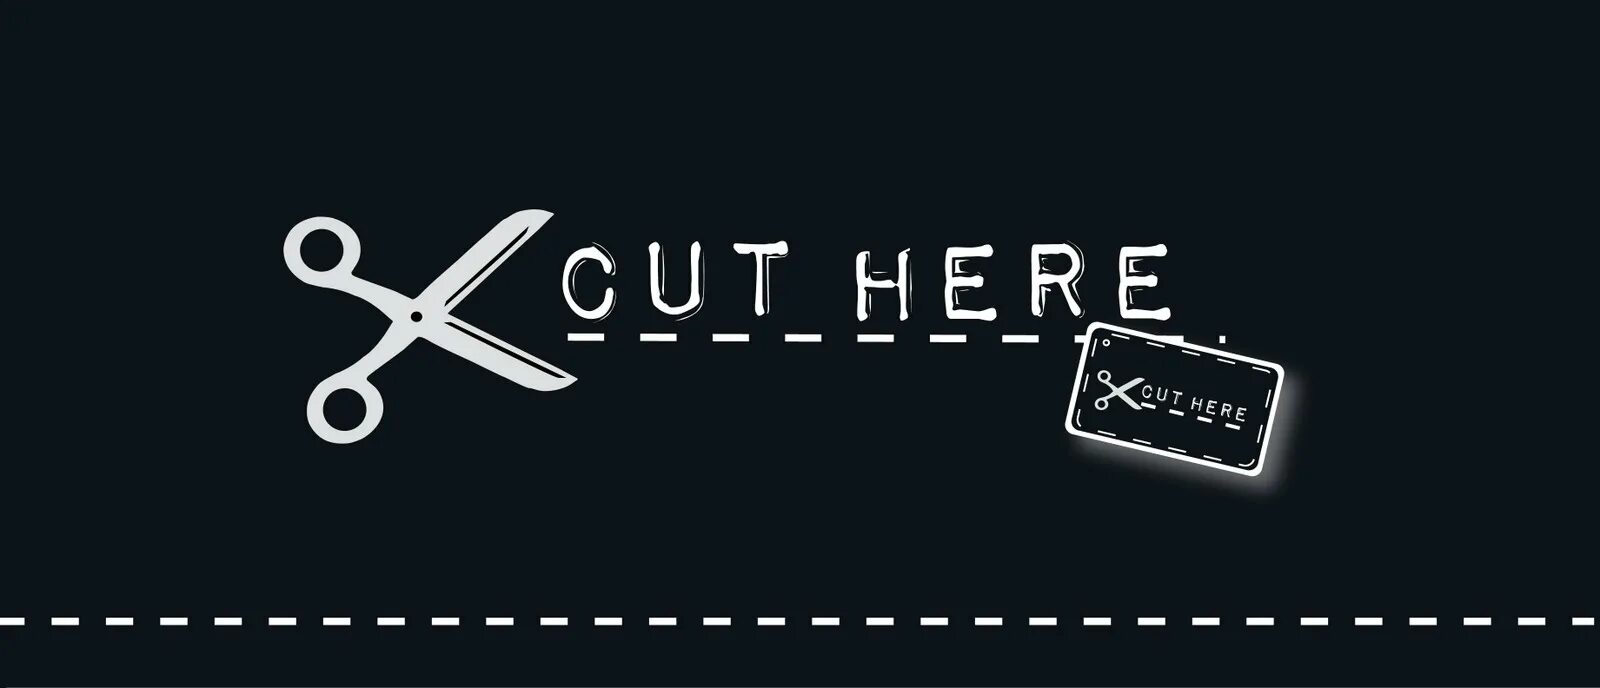 Cut Cut Cut. Здесь here